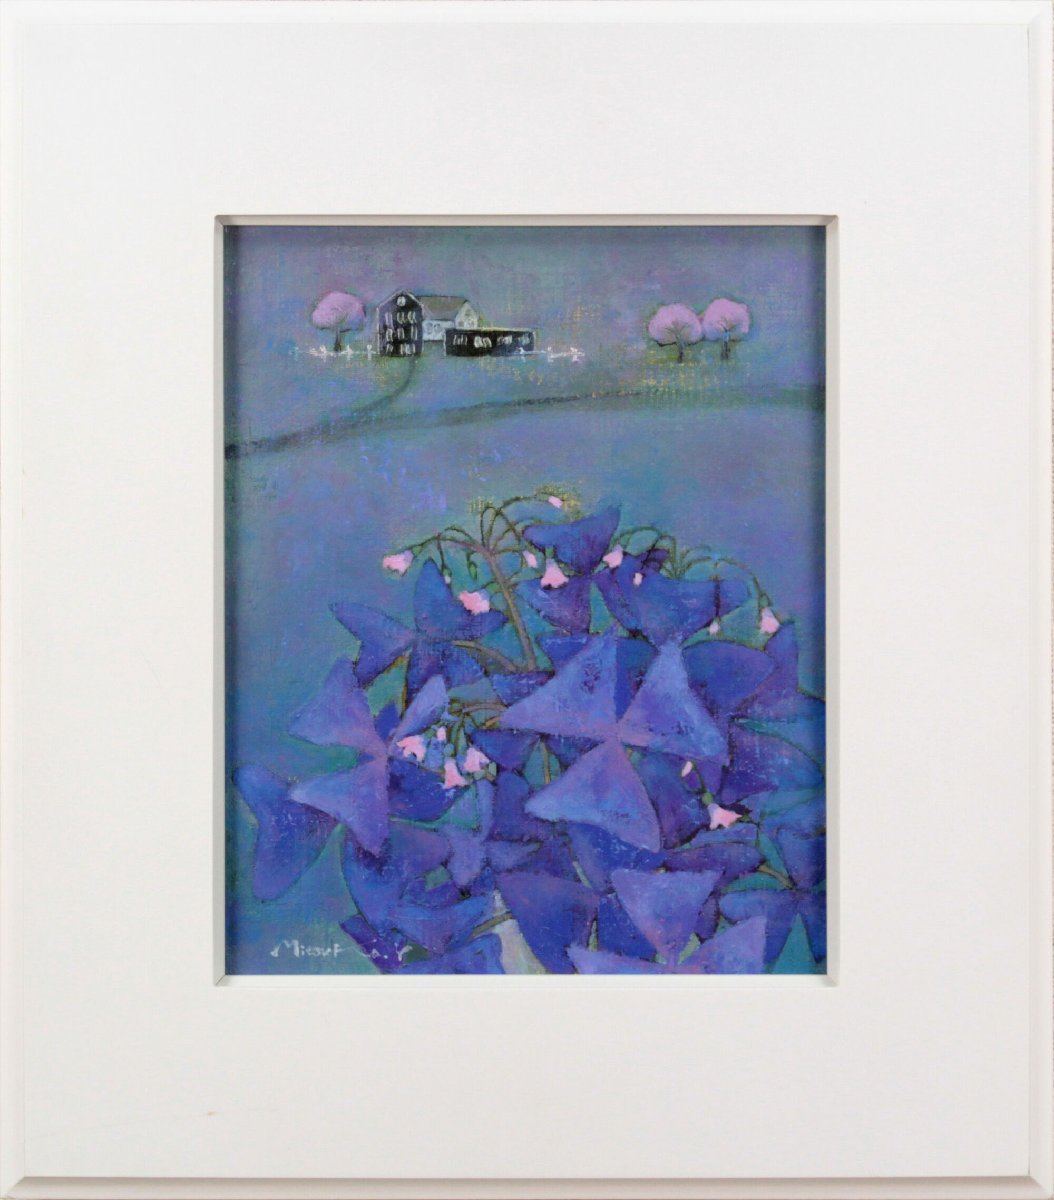 Mitsuko Yoshii Premonition of Flowers Ölgemälde [Authentizität garantiert] Gemälde - Hokkaido Gallery, Malerei, Ölgemälde, Natur, Landschaftsmalerei